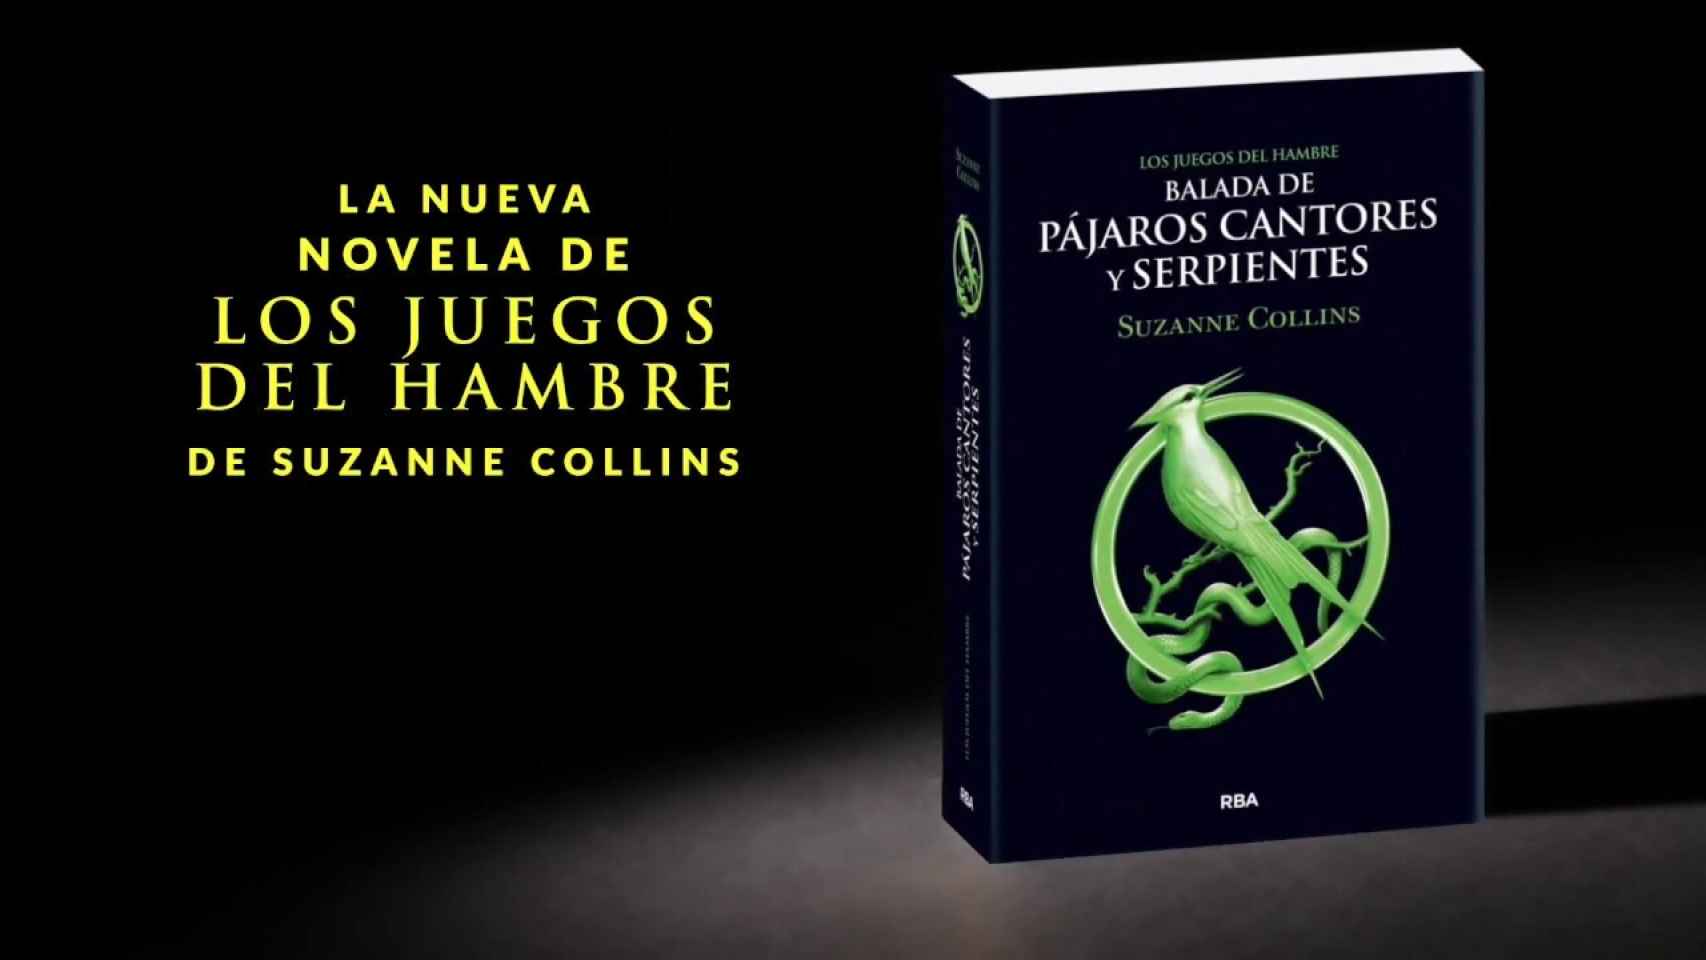 La novela 'Balada de pájaros cantores y serpientes' de Suzanne Collins que adaptará la película.